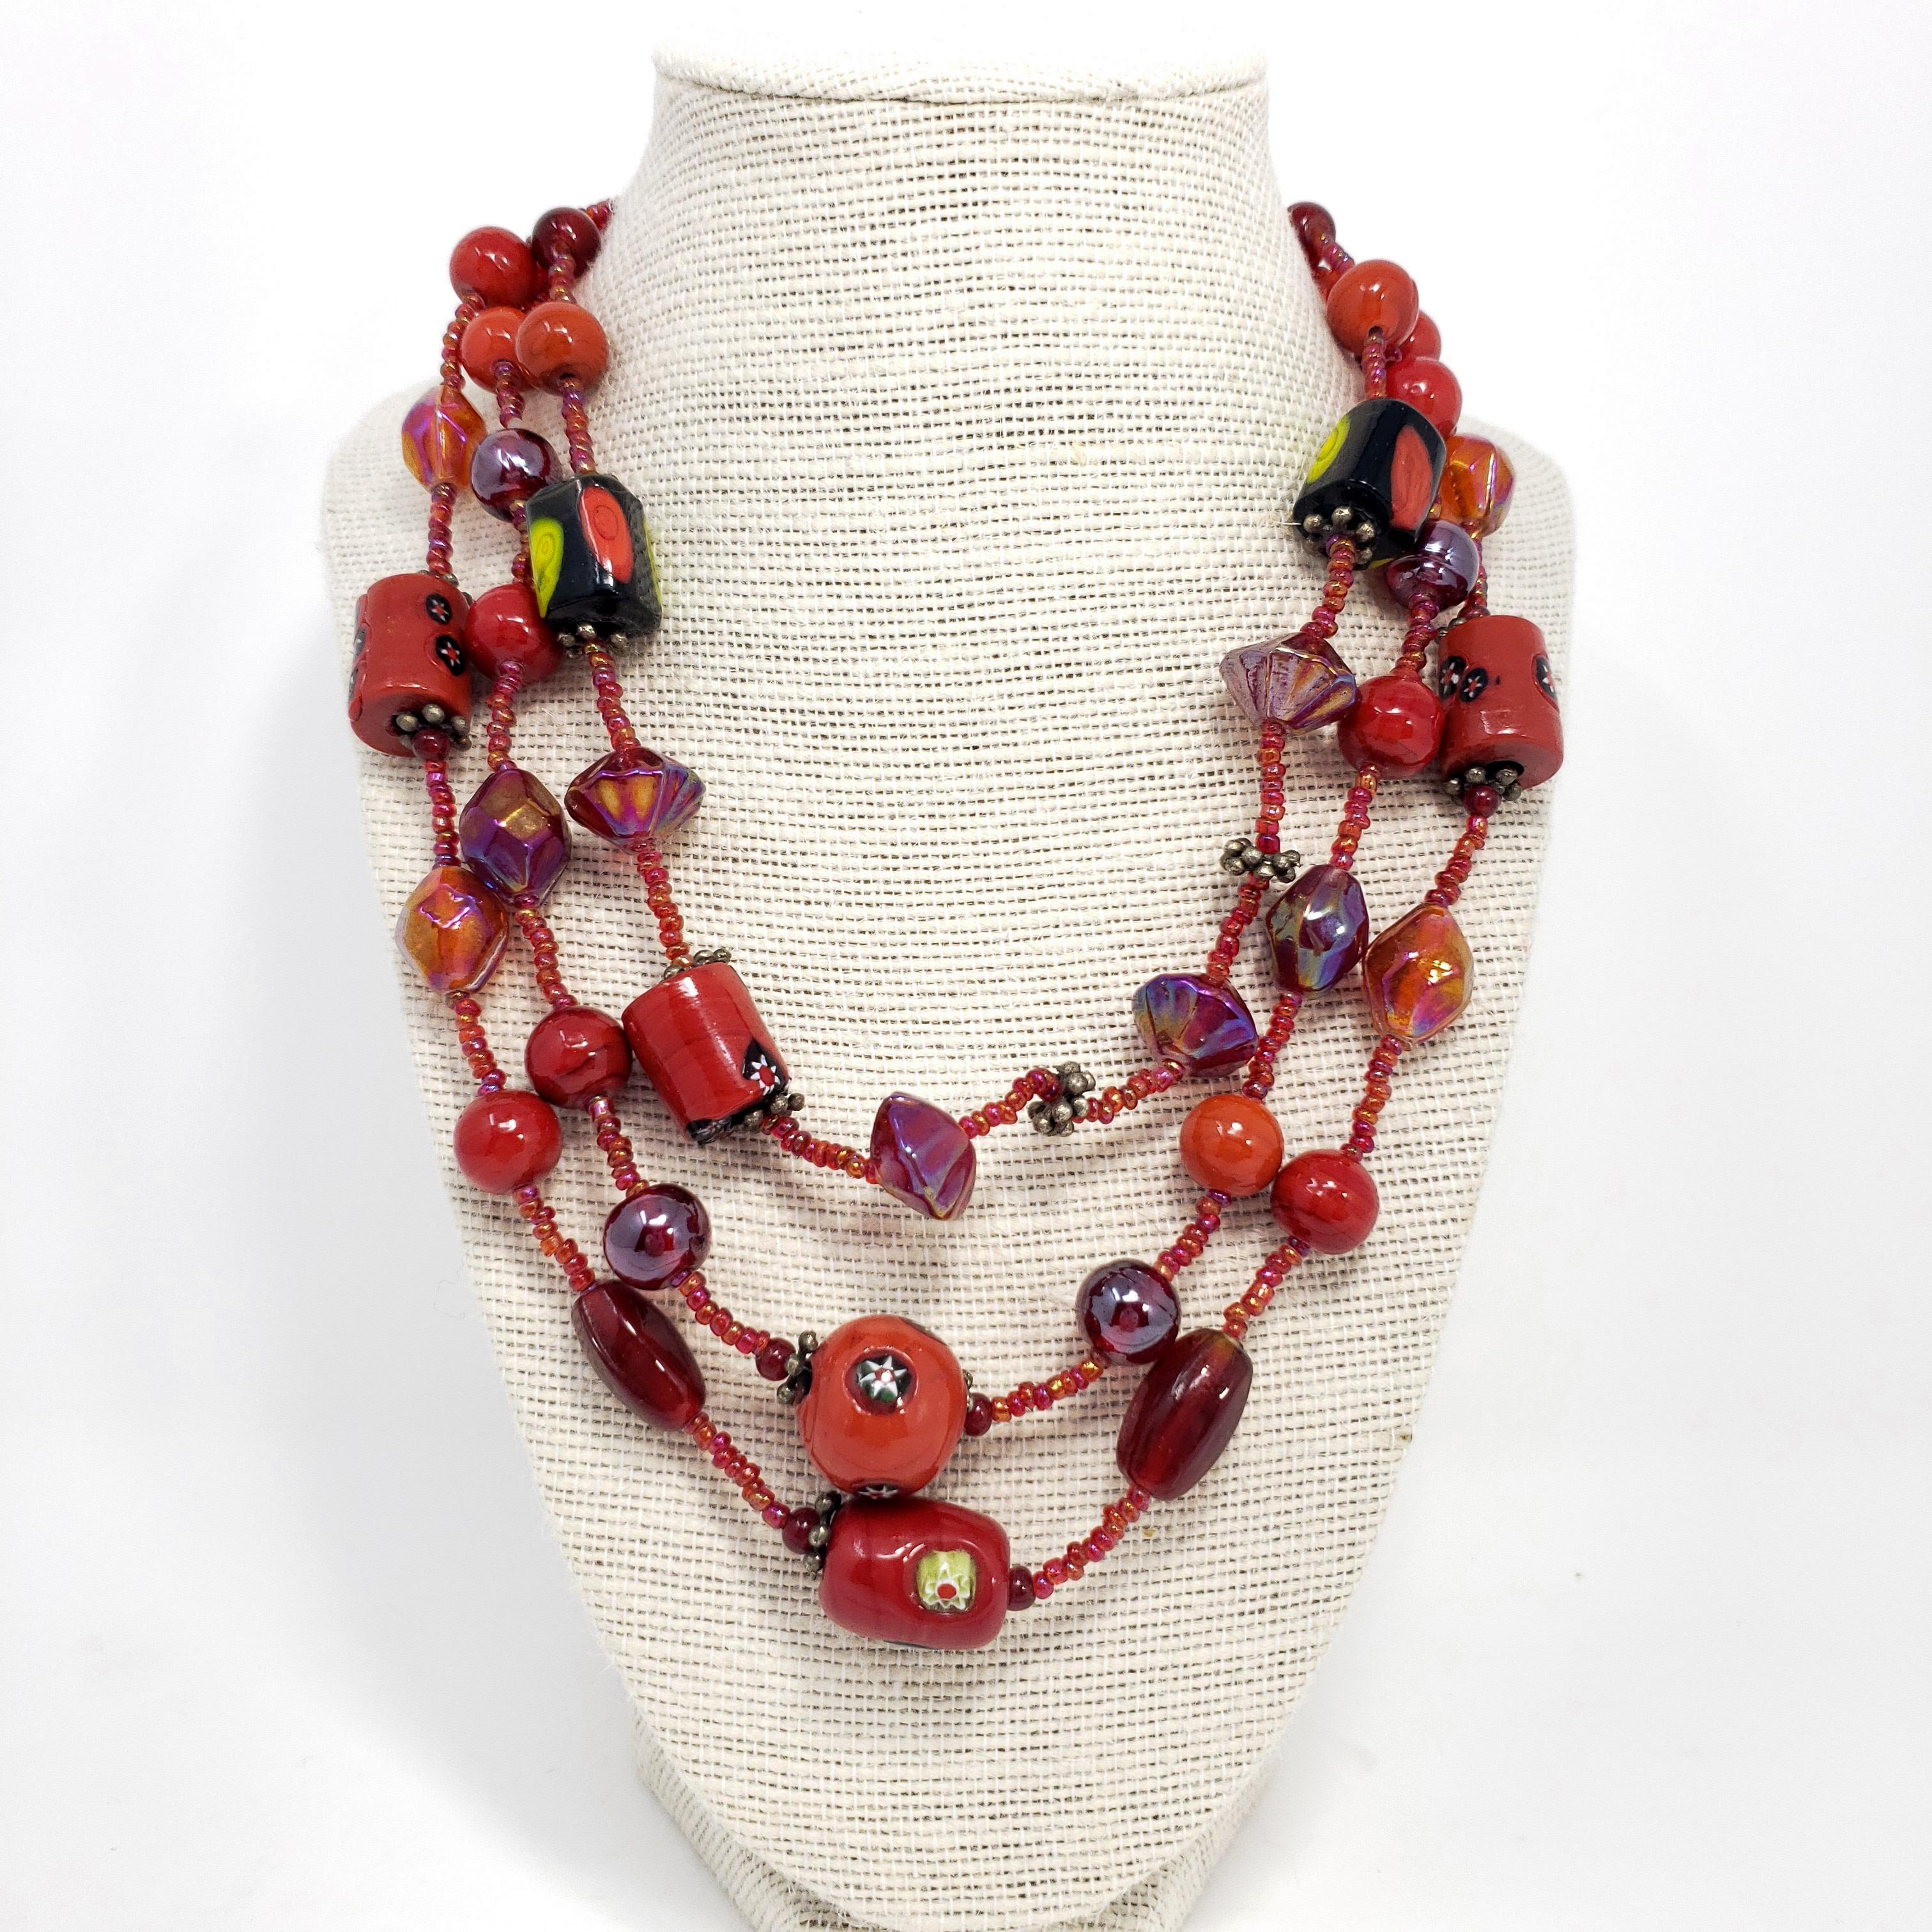 Collier vintage élégant composé de trois rangs de perles en verre artistique rouge et d'un élégant fermoir à crochet de couleur argentée.

Longueur : 16.5 à 18.5 pouces avec la chaîne d'extension.